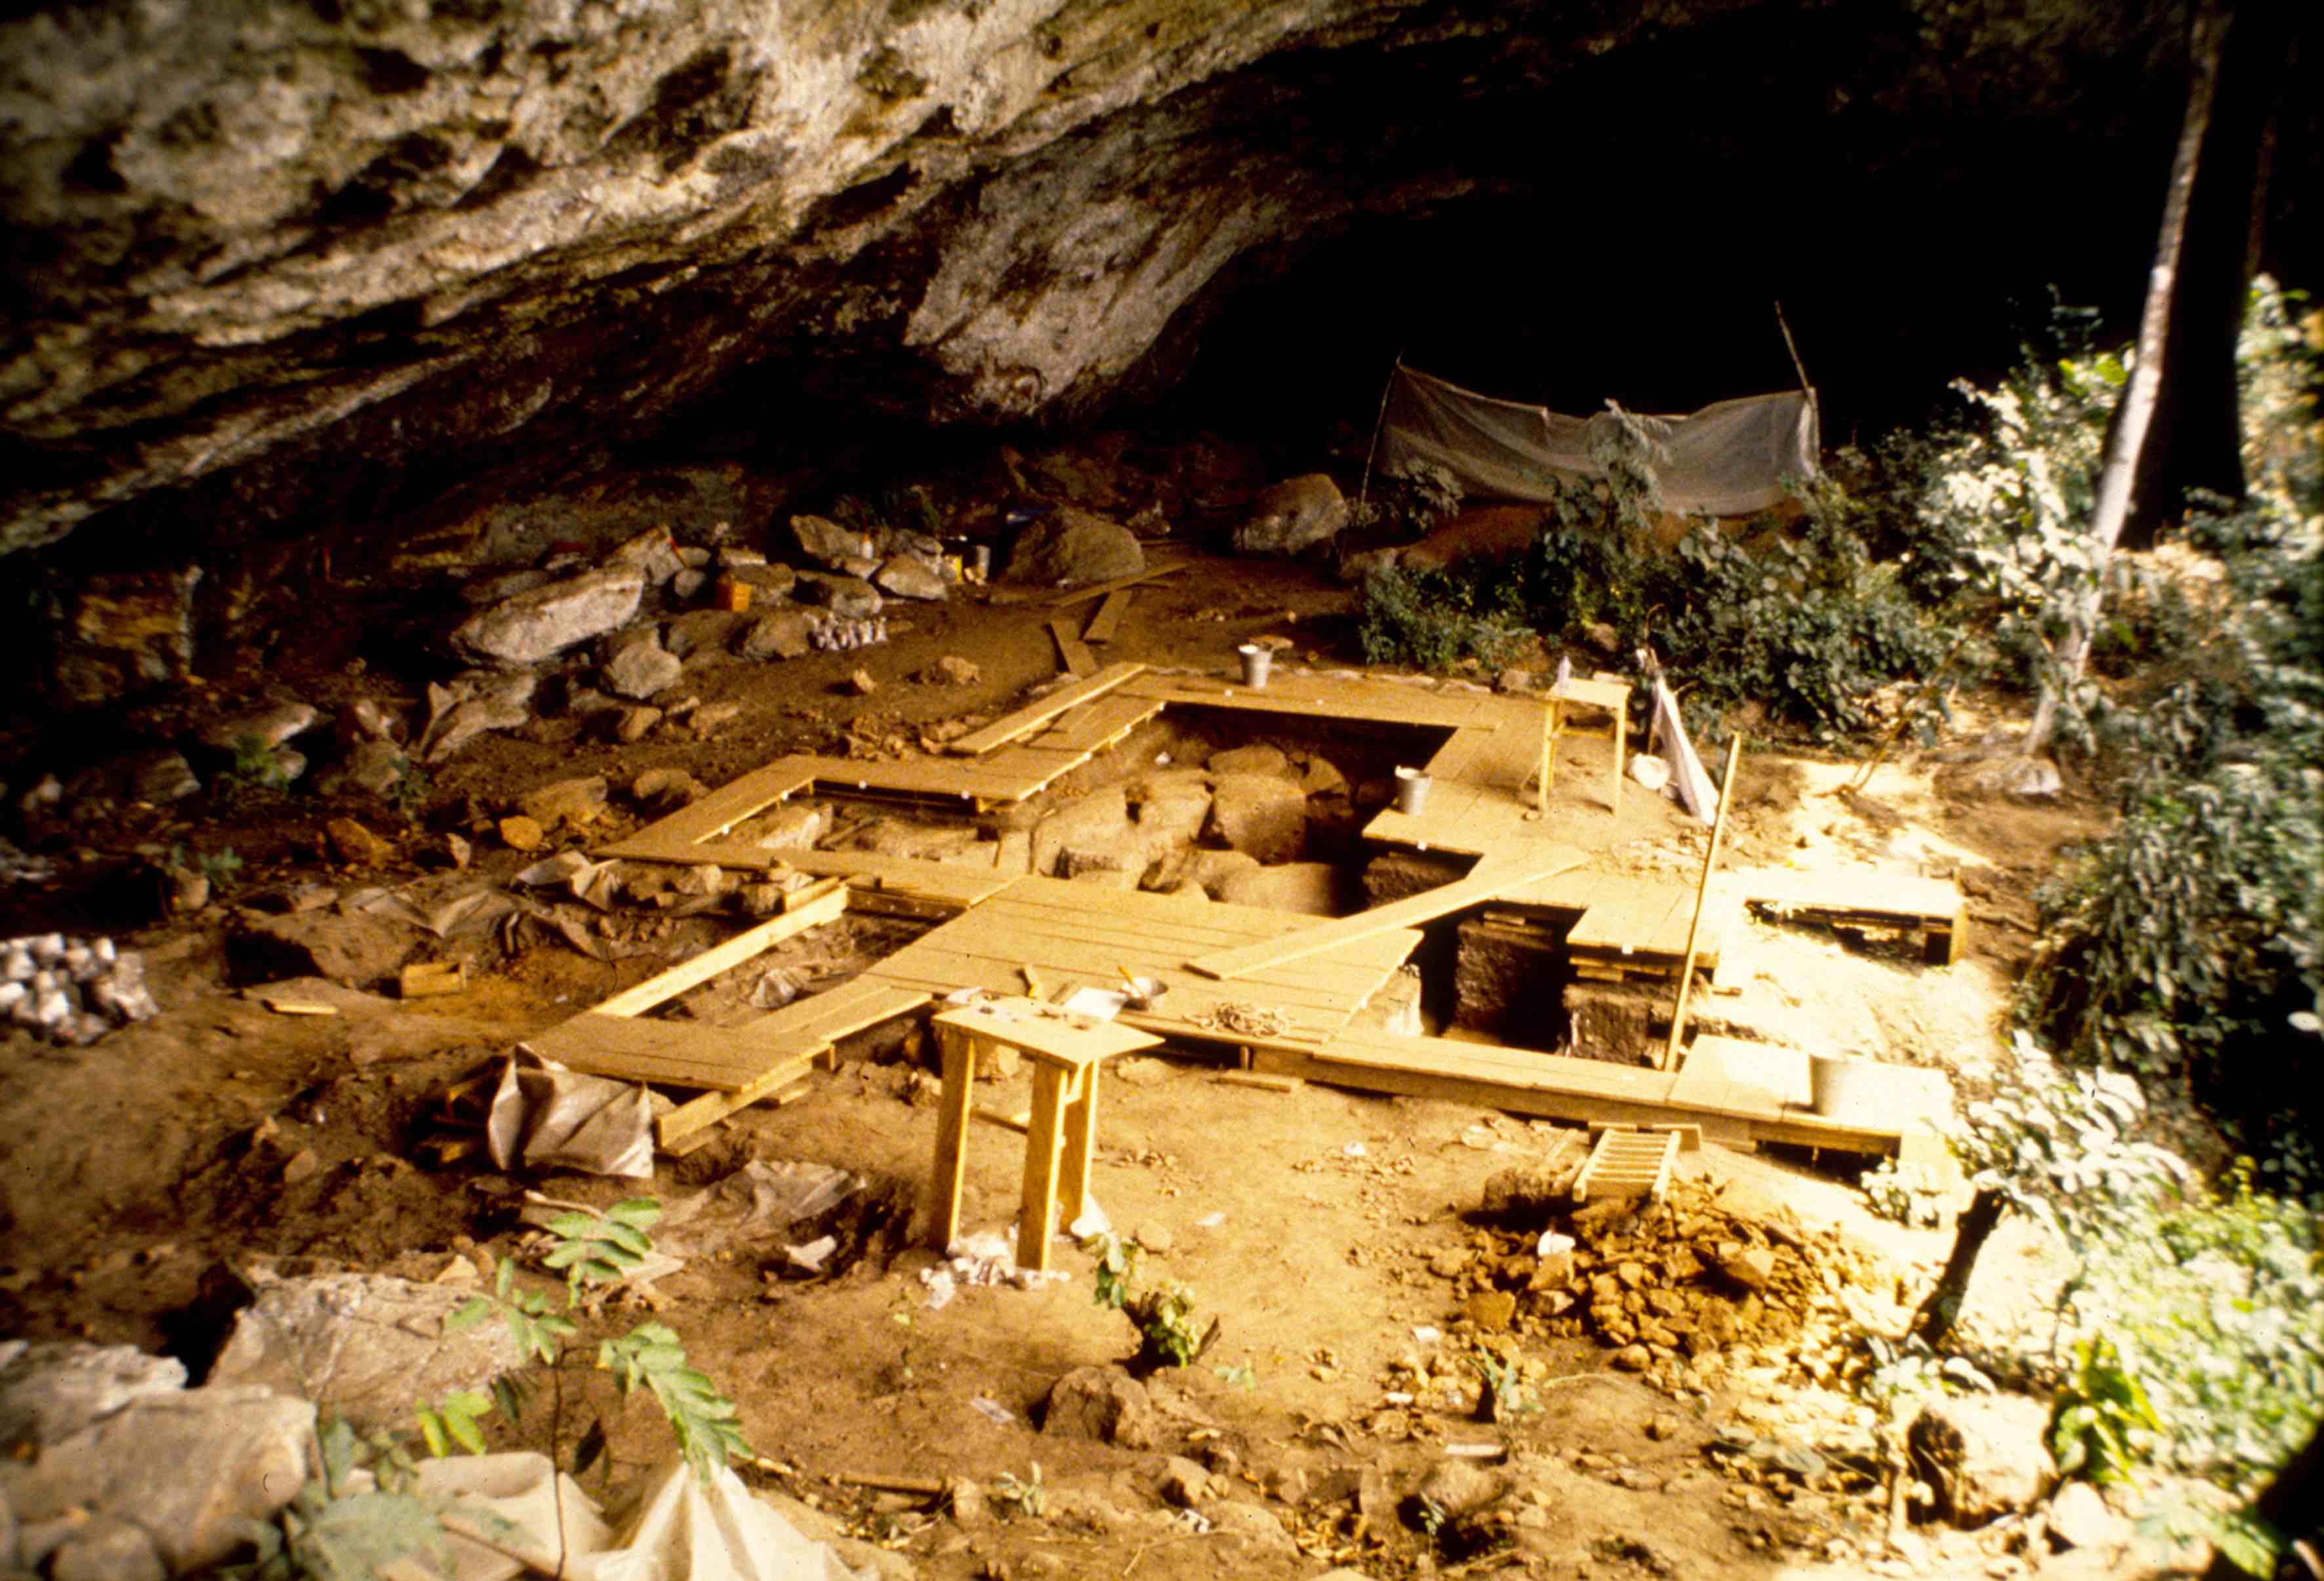 Overview of the excavation of Shum Laka in Cameroon (foto de Pierre de Maret, enero de 1994).